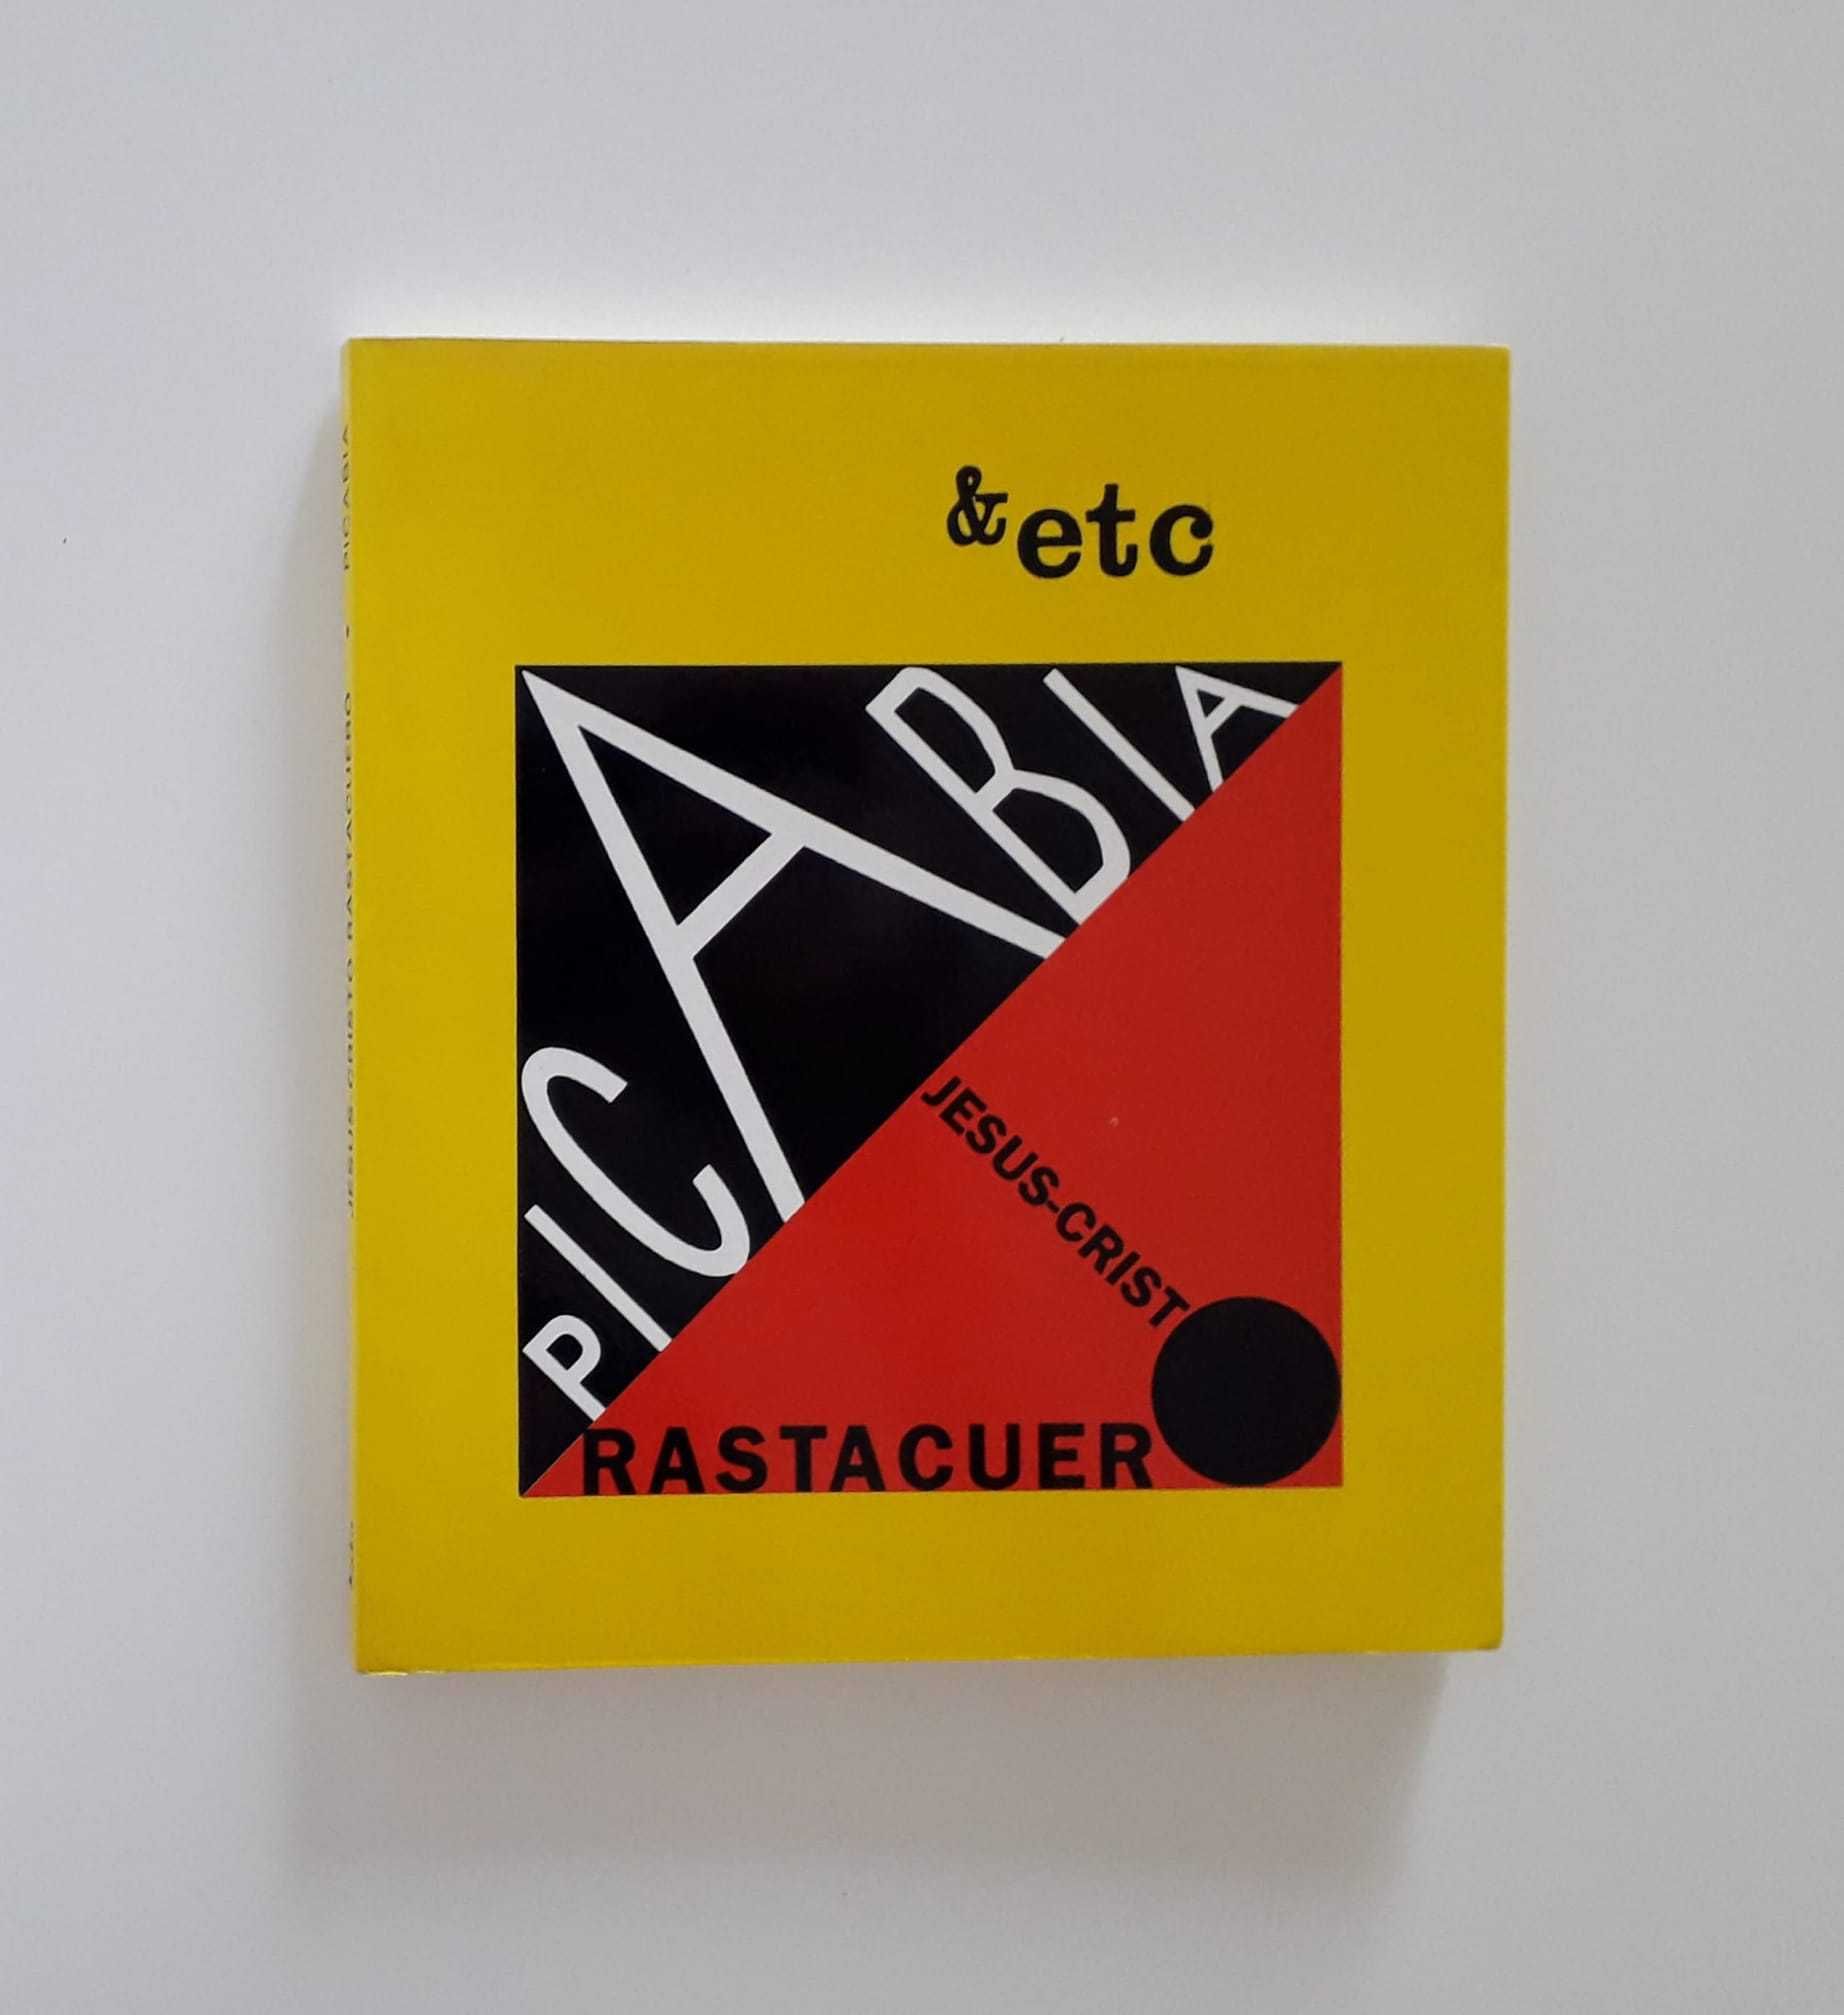 Alberto Pimenta, Adília Lopes, Paul Verlaine, Artaud, Max Ernst (&etc)